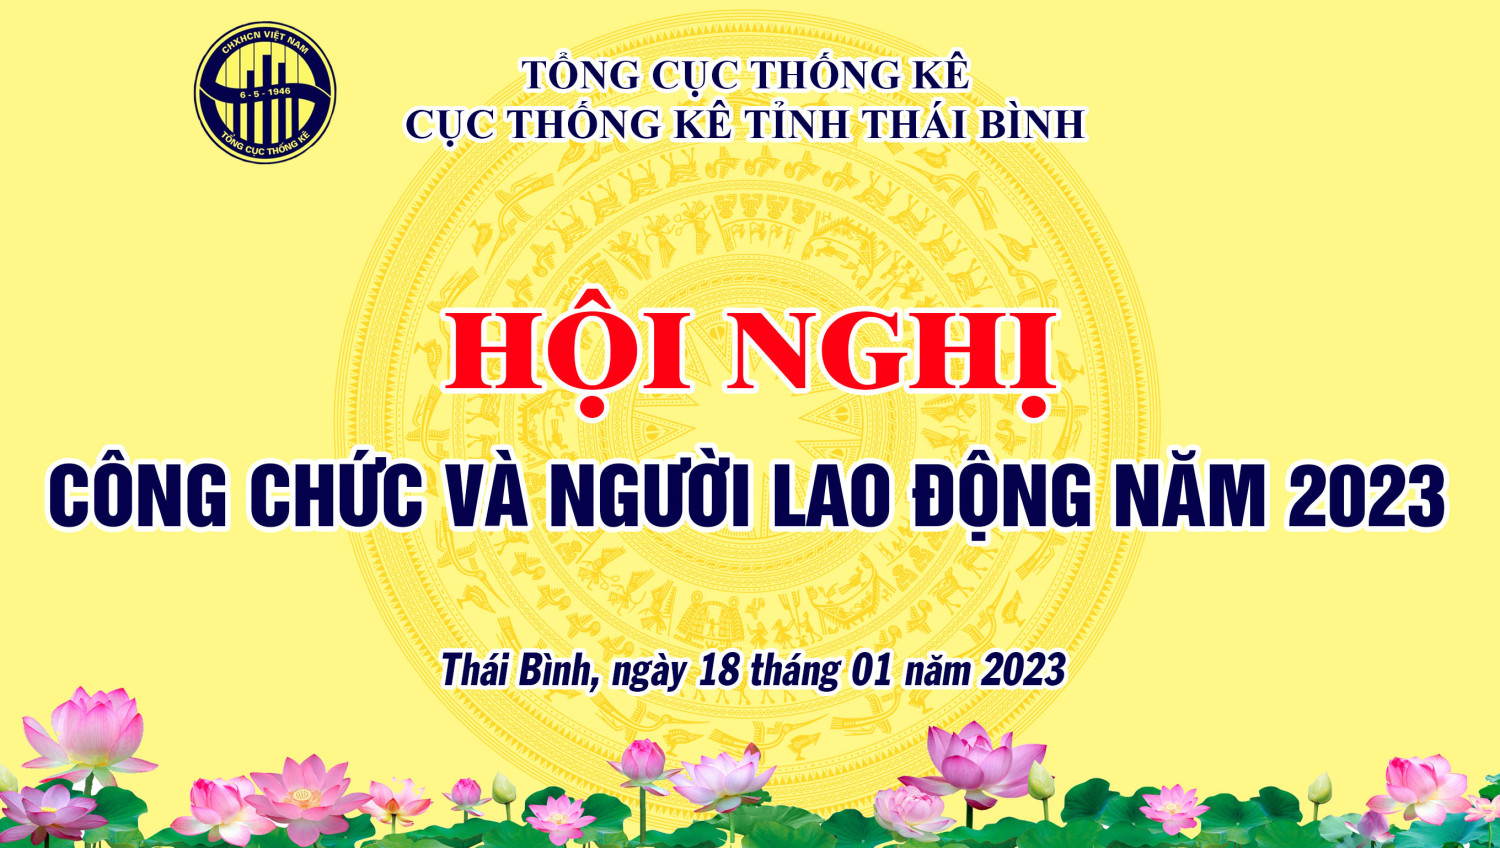 Cục Thống kê Thái Bình tổ chức Hội nghị công chức và người lao động năm 2023